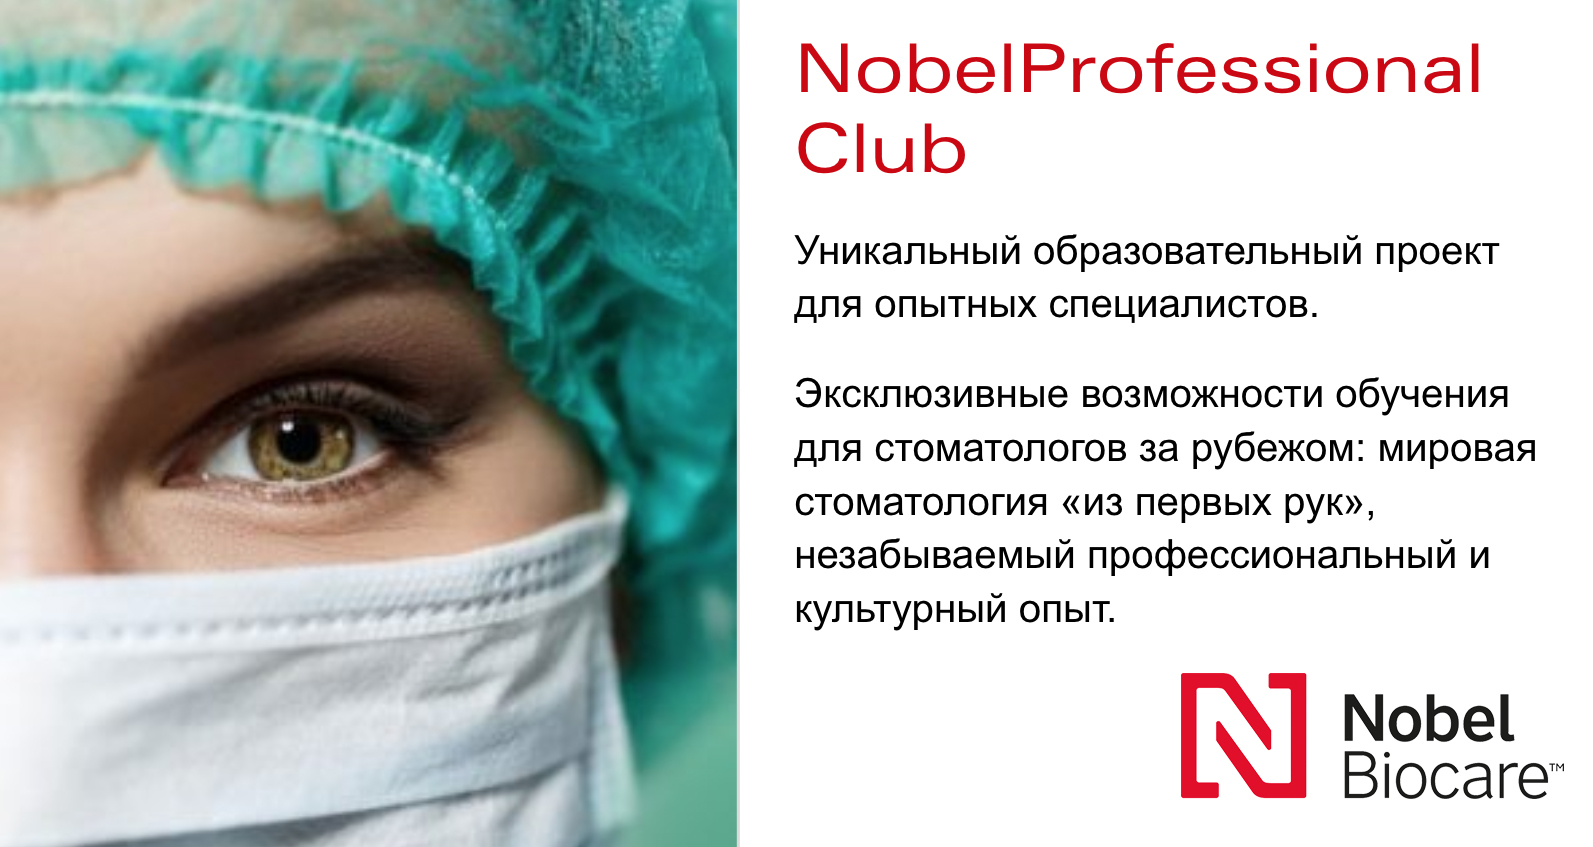 Образовательный проект от Nobel Biocare